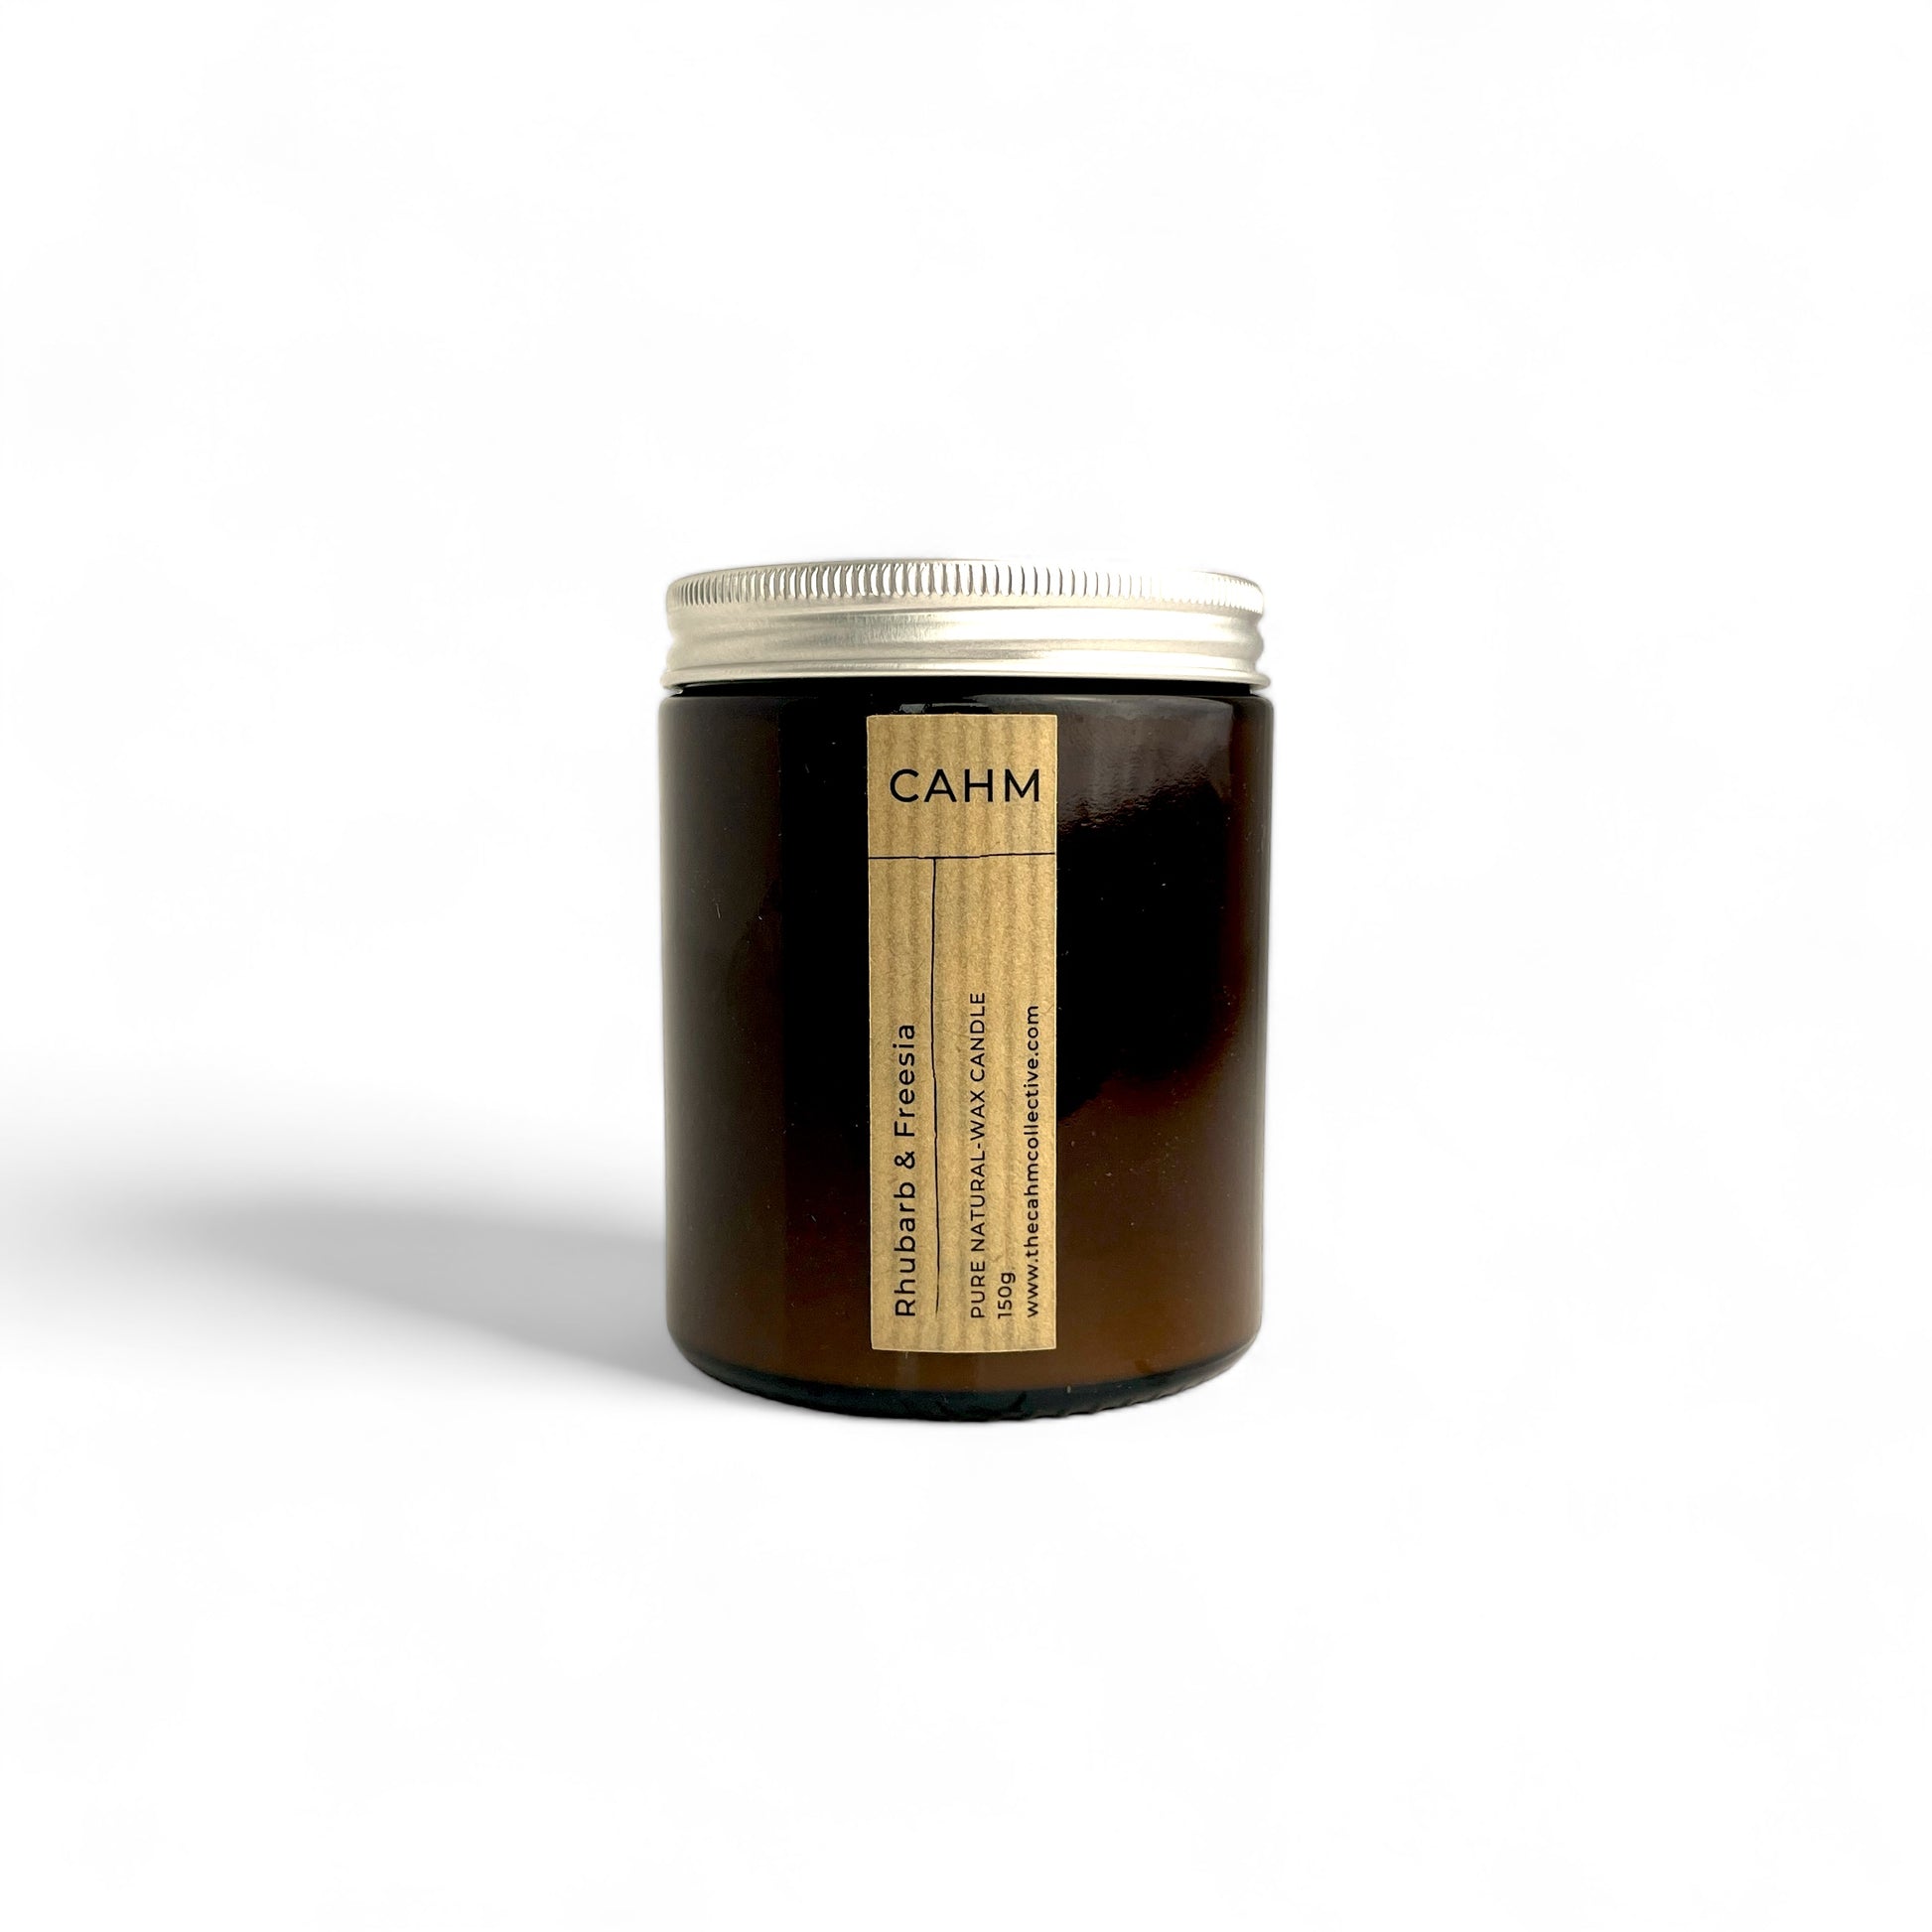 CAHM Rhubarb & Freesia Candle - Amber Jar